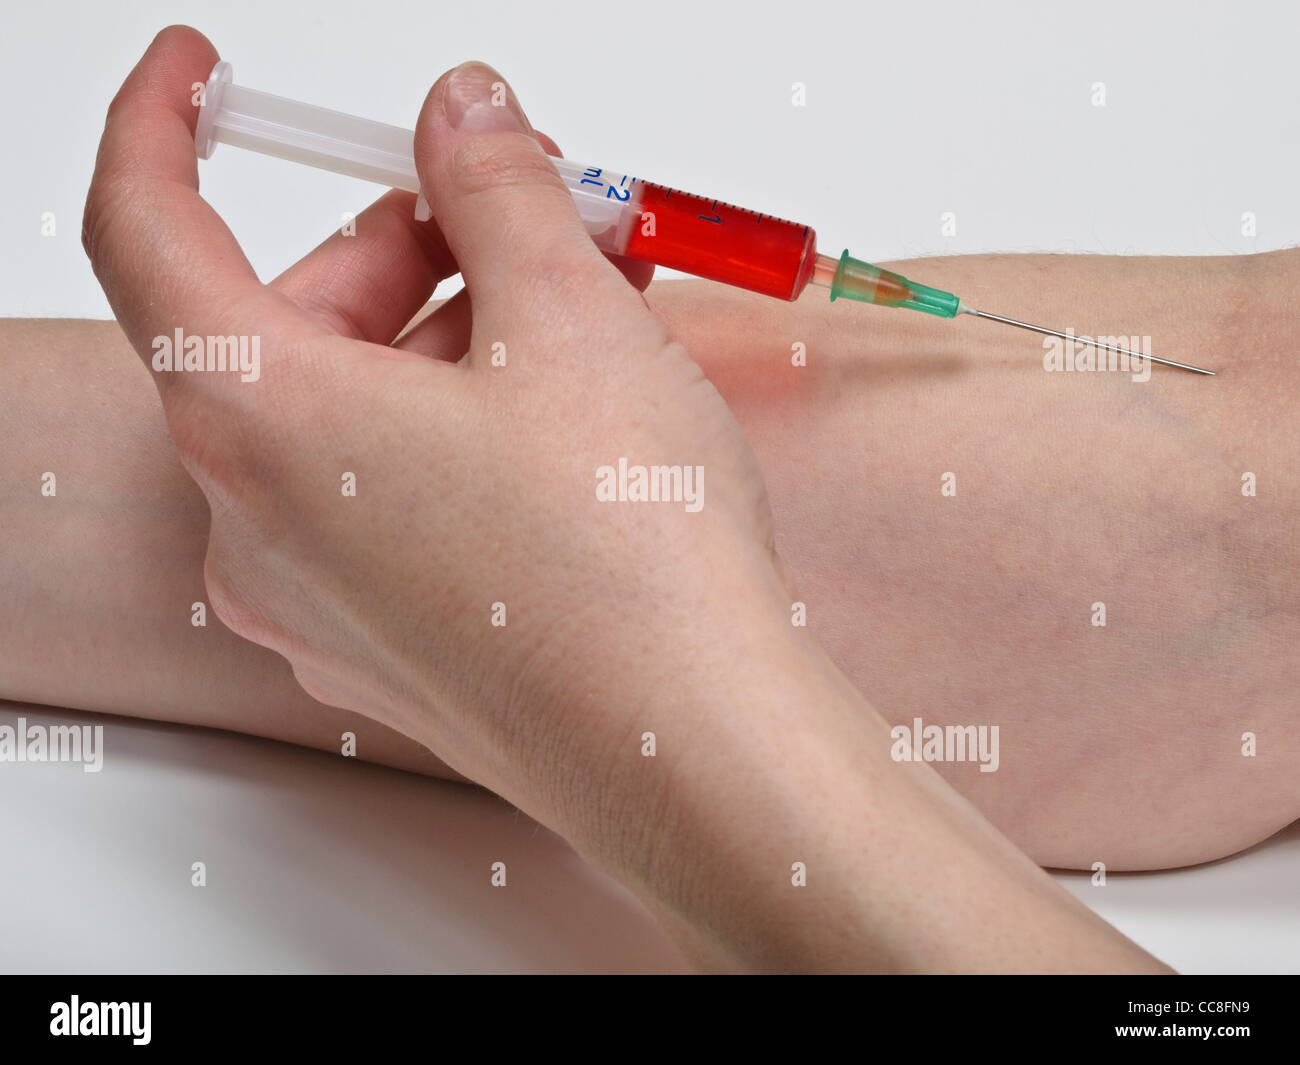 eine Spritze mit roter Flüssigkeit wird in den Arm gespritzt | a syringe with red liquid is injected into the arm Stock Photo